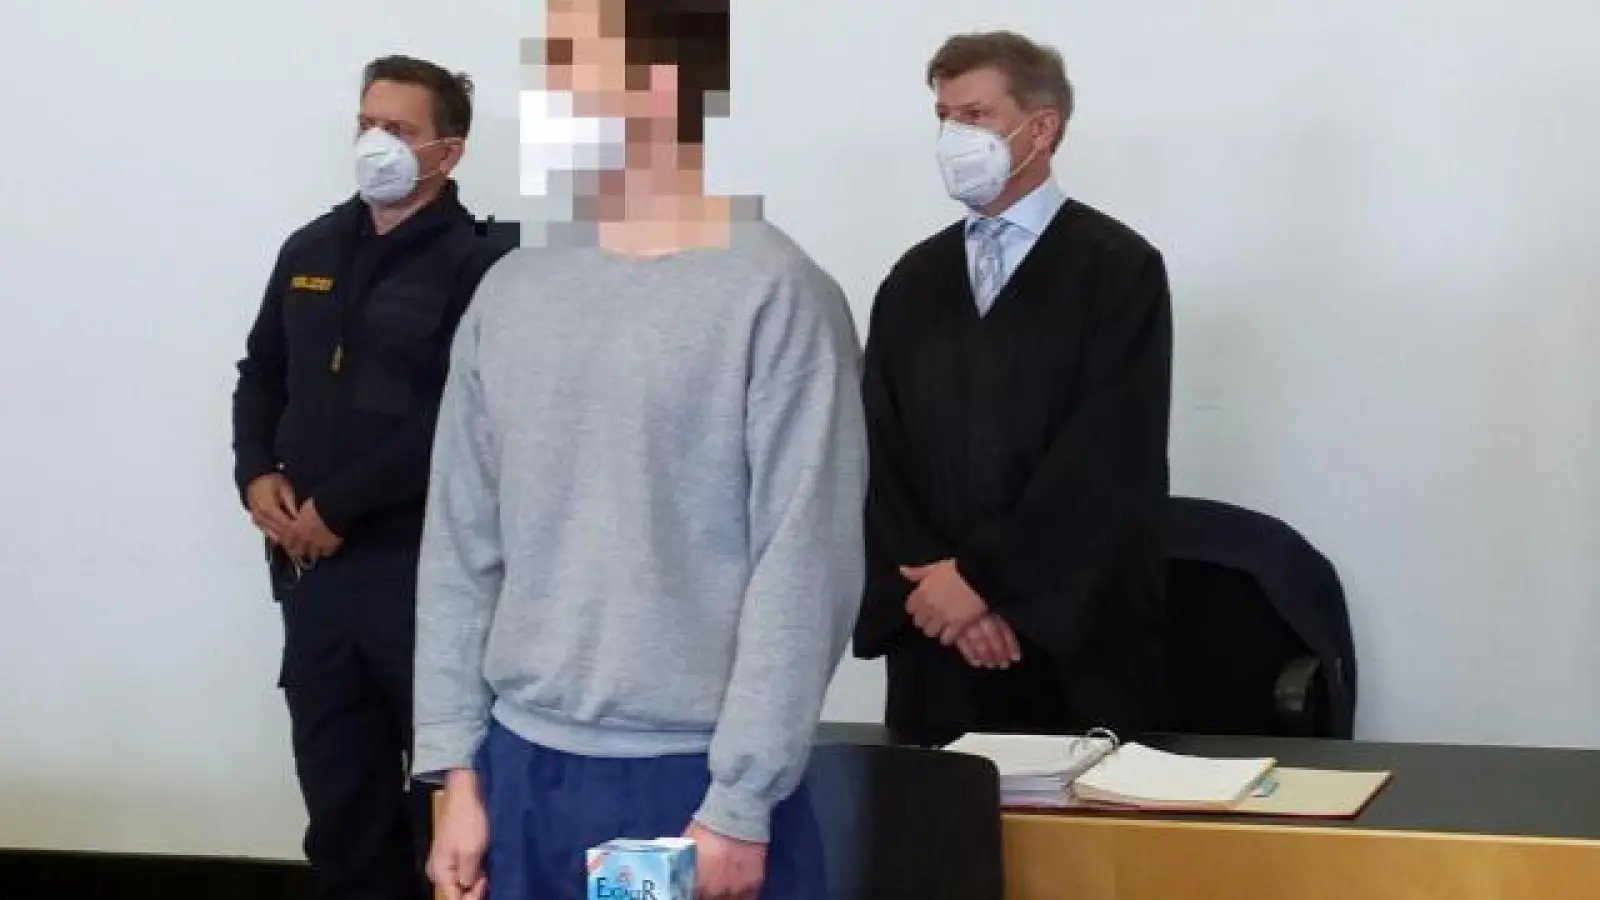 Der 20-jährige Angeklagte   wollte am ersten Prozesstag keine Angaben machen. Verteidigt wird er unter anderem von Rechtsanwalt Werner Ruisinger (rechts). 		Foto: Patrick Bruckner (Foto: Patrick Bruckner)